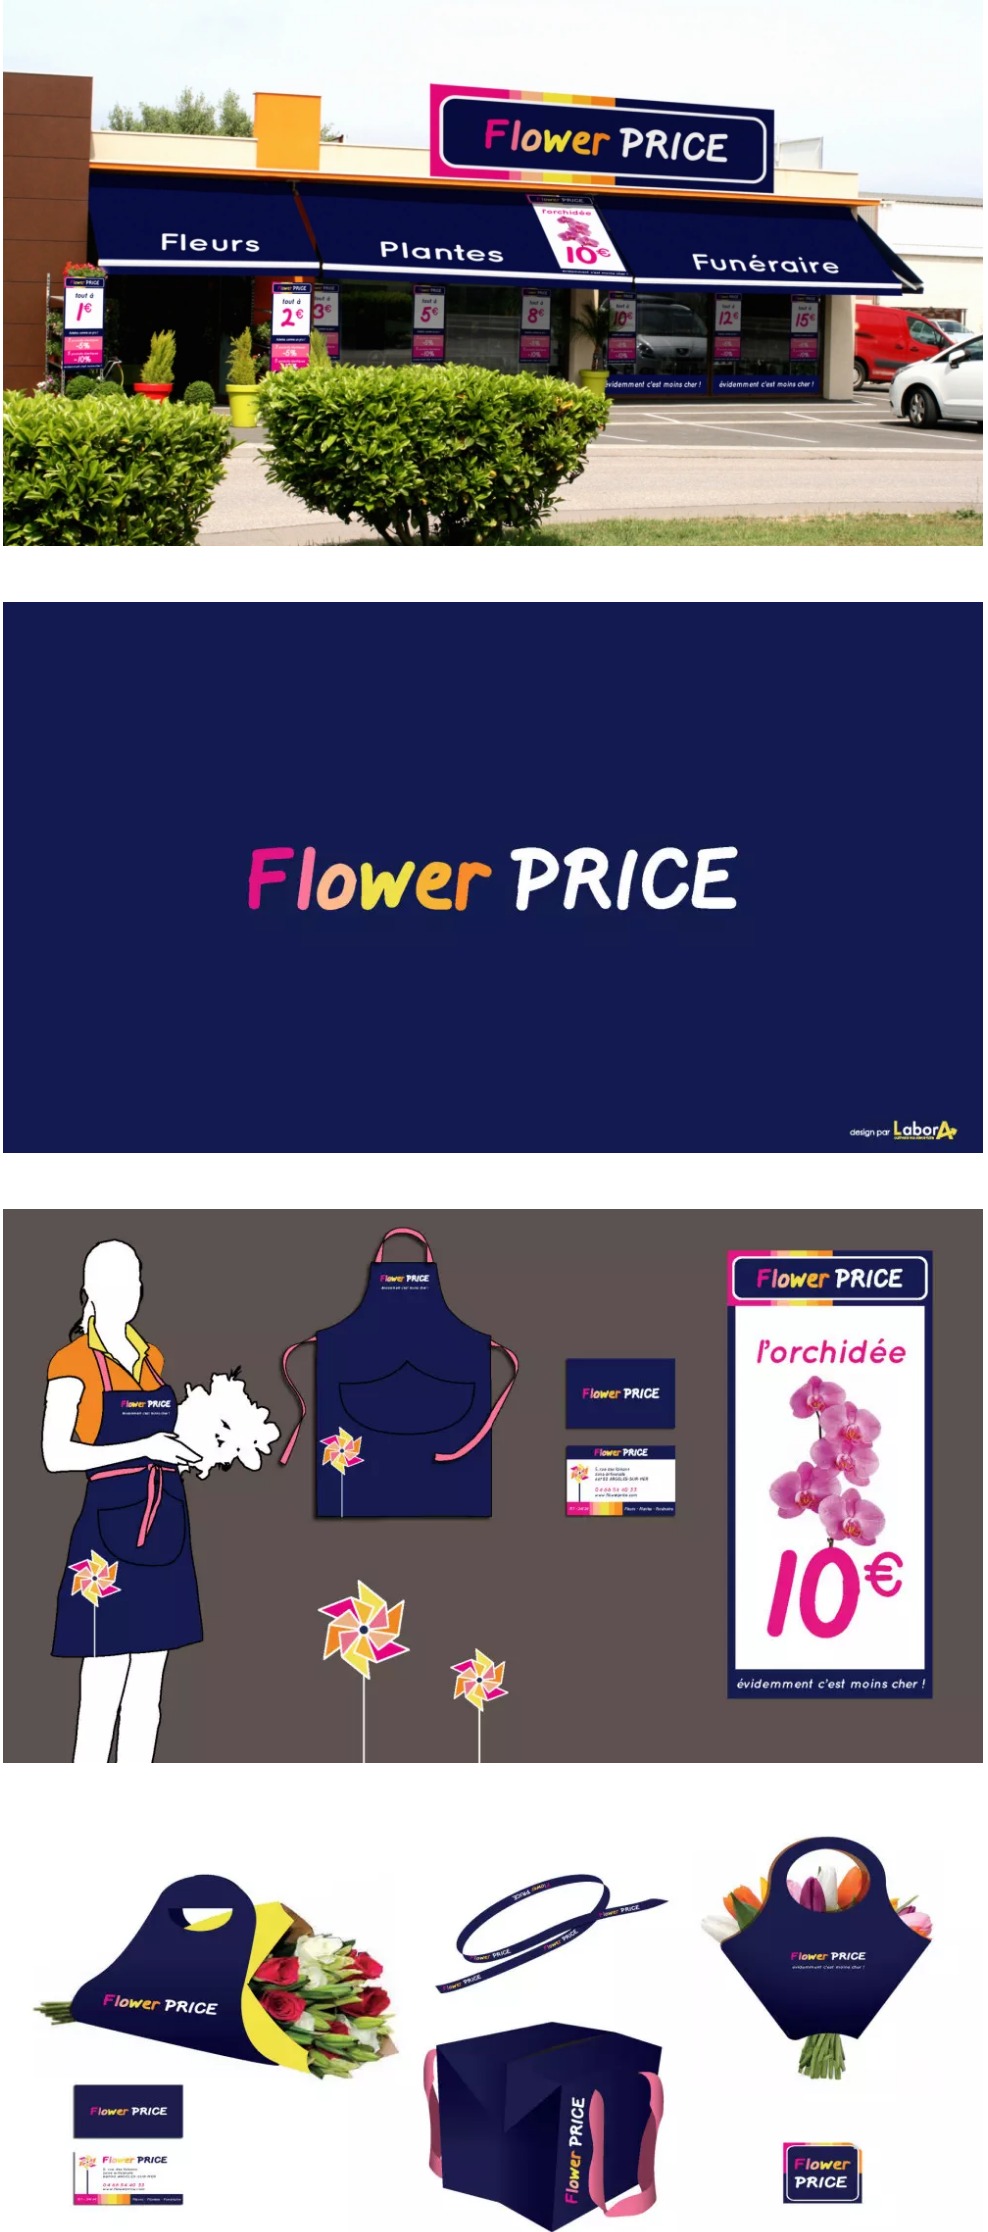 Labora-Flower-Price-Concept-Store-Reseau-De-Fleuristes-Low-Cost-Provideup